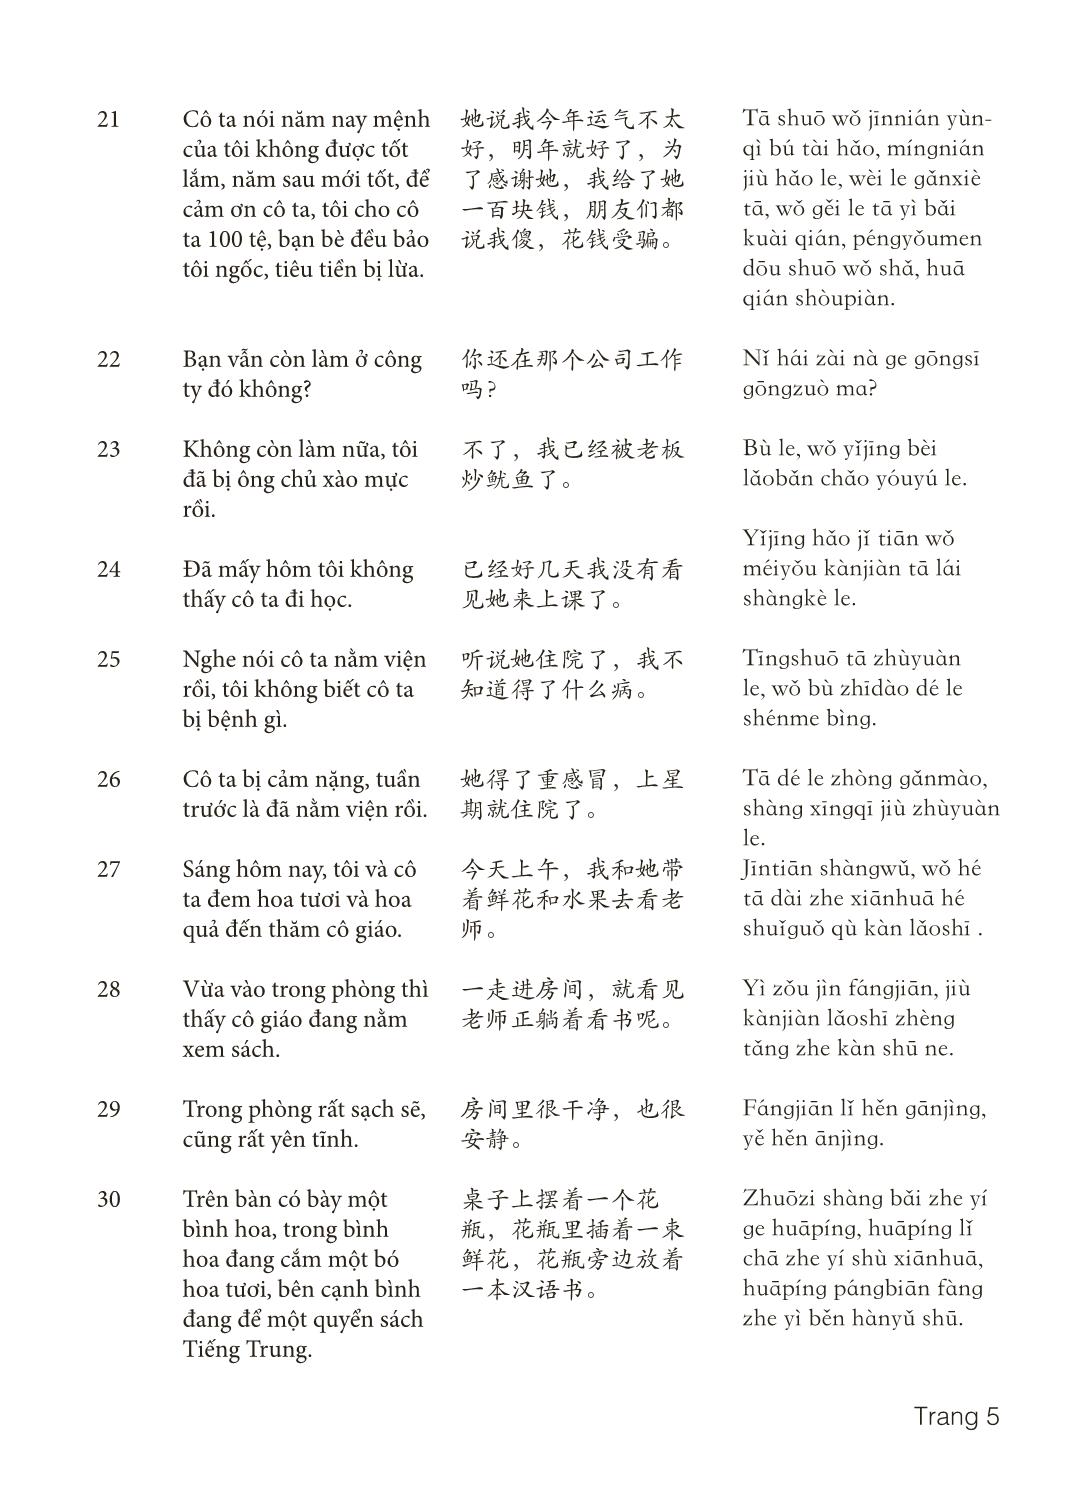 3000 Câu đàm thoại tiếng Hoa - Phần 23 trang 5